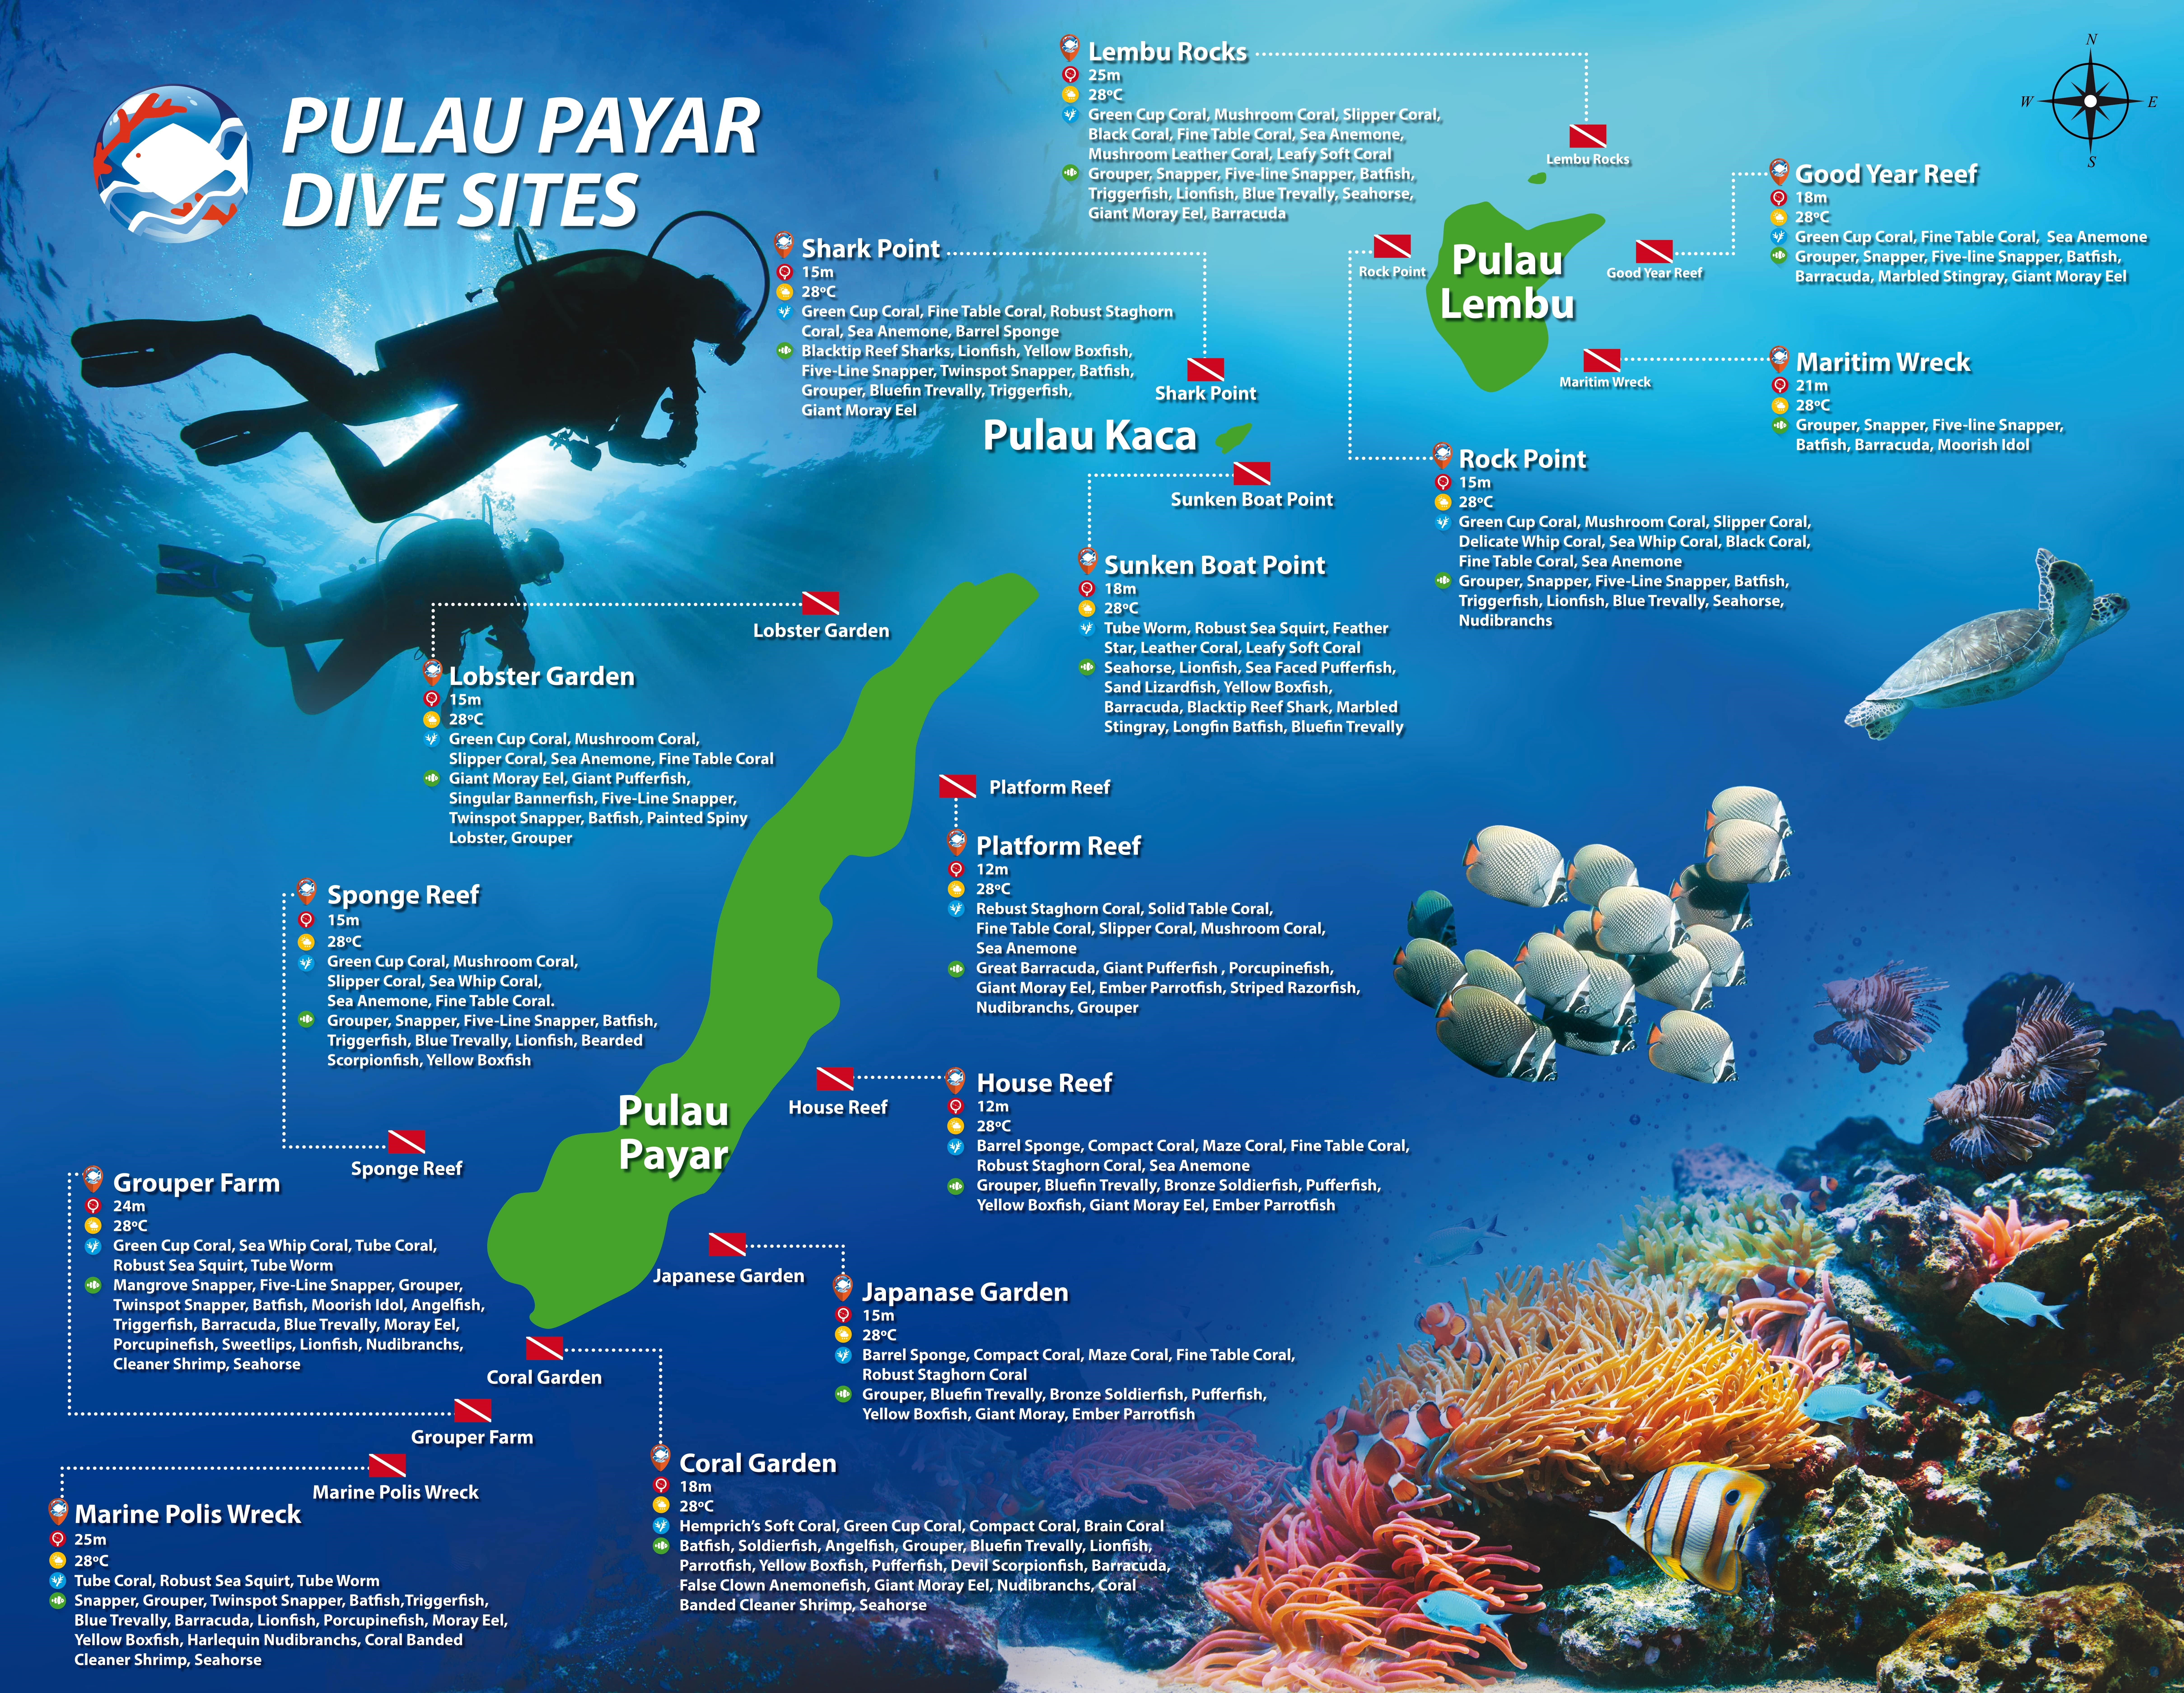 Pulau Payar Dive Sites.jpg